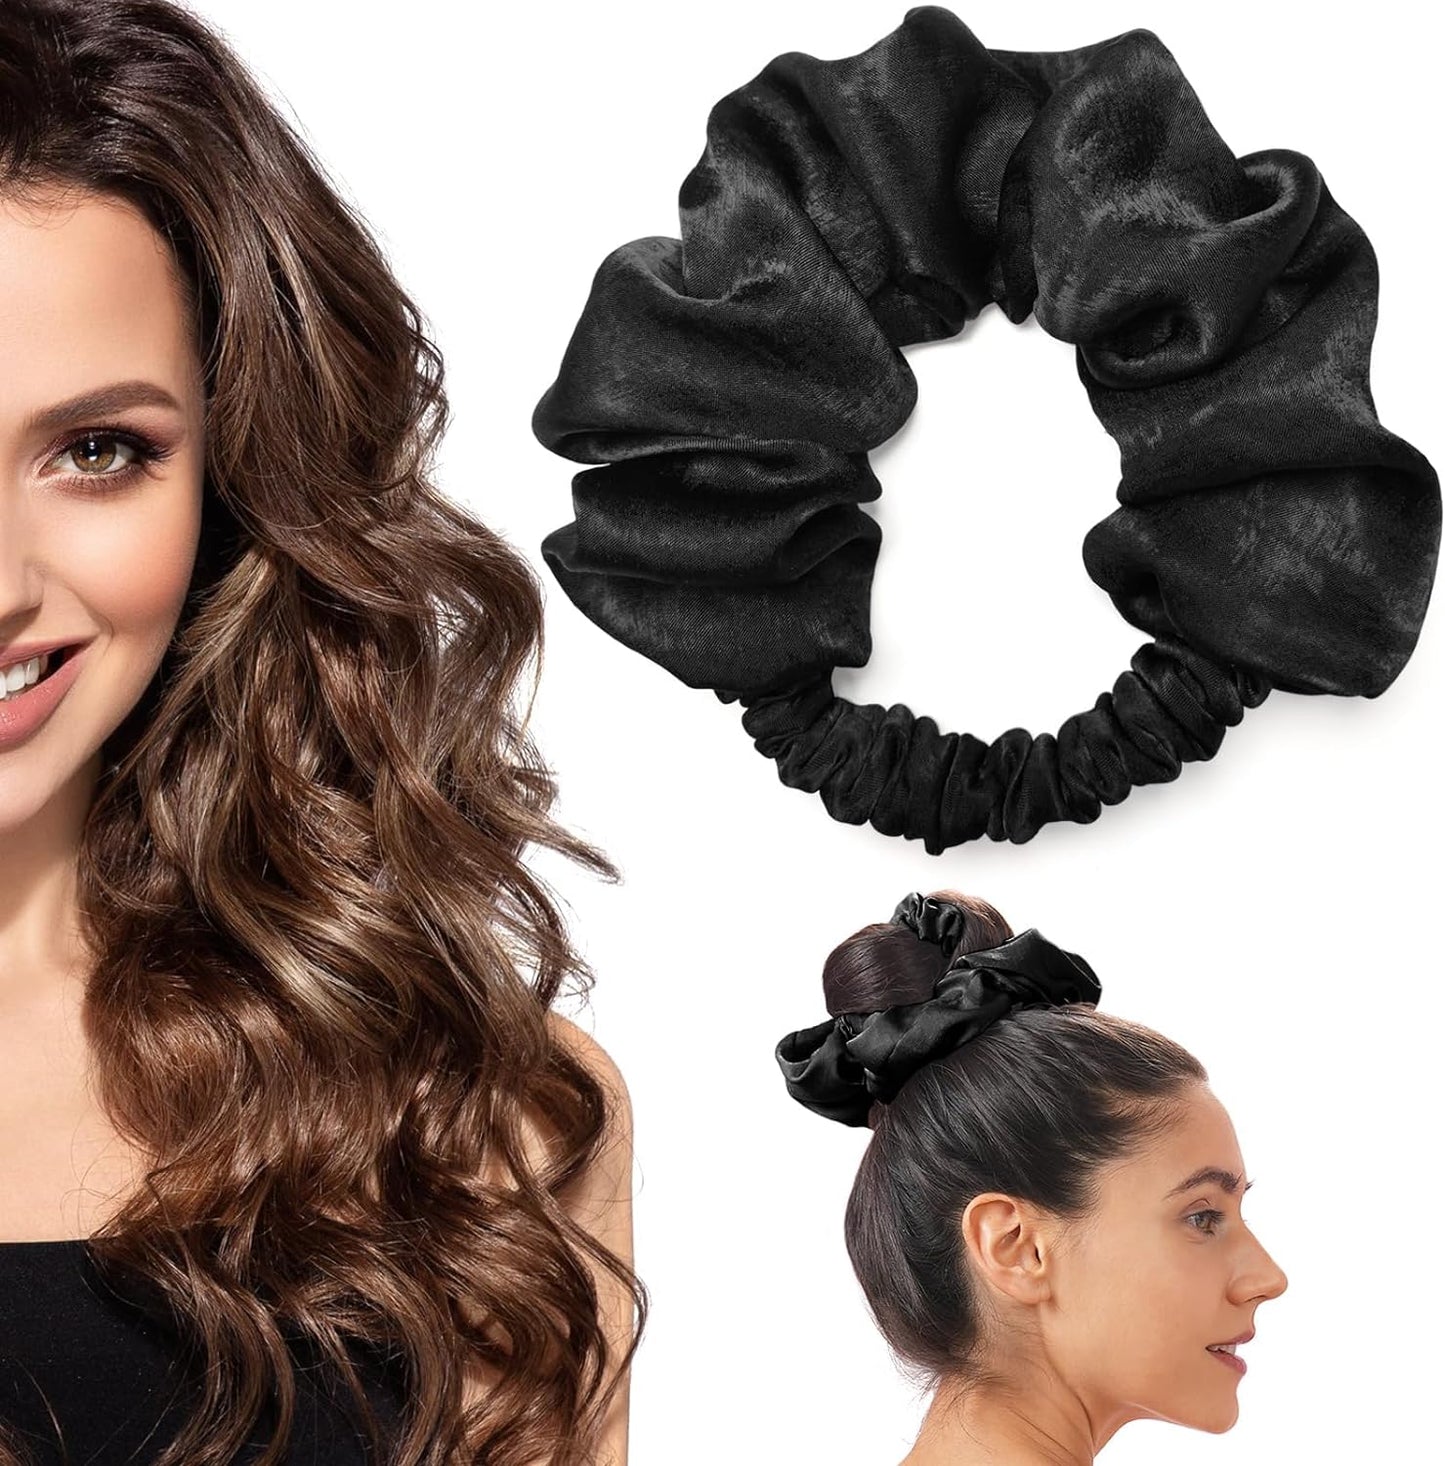 De grote scrunchie in de kleur zwart. De zijden scrunchie is perfect voor heatless curls. Beste resultaten tijdens het slapen.